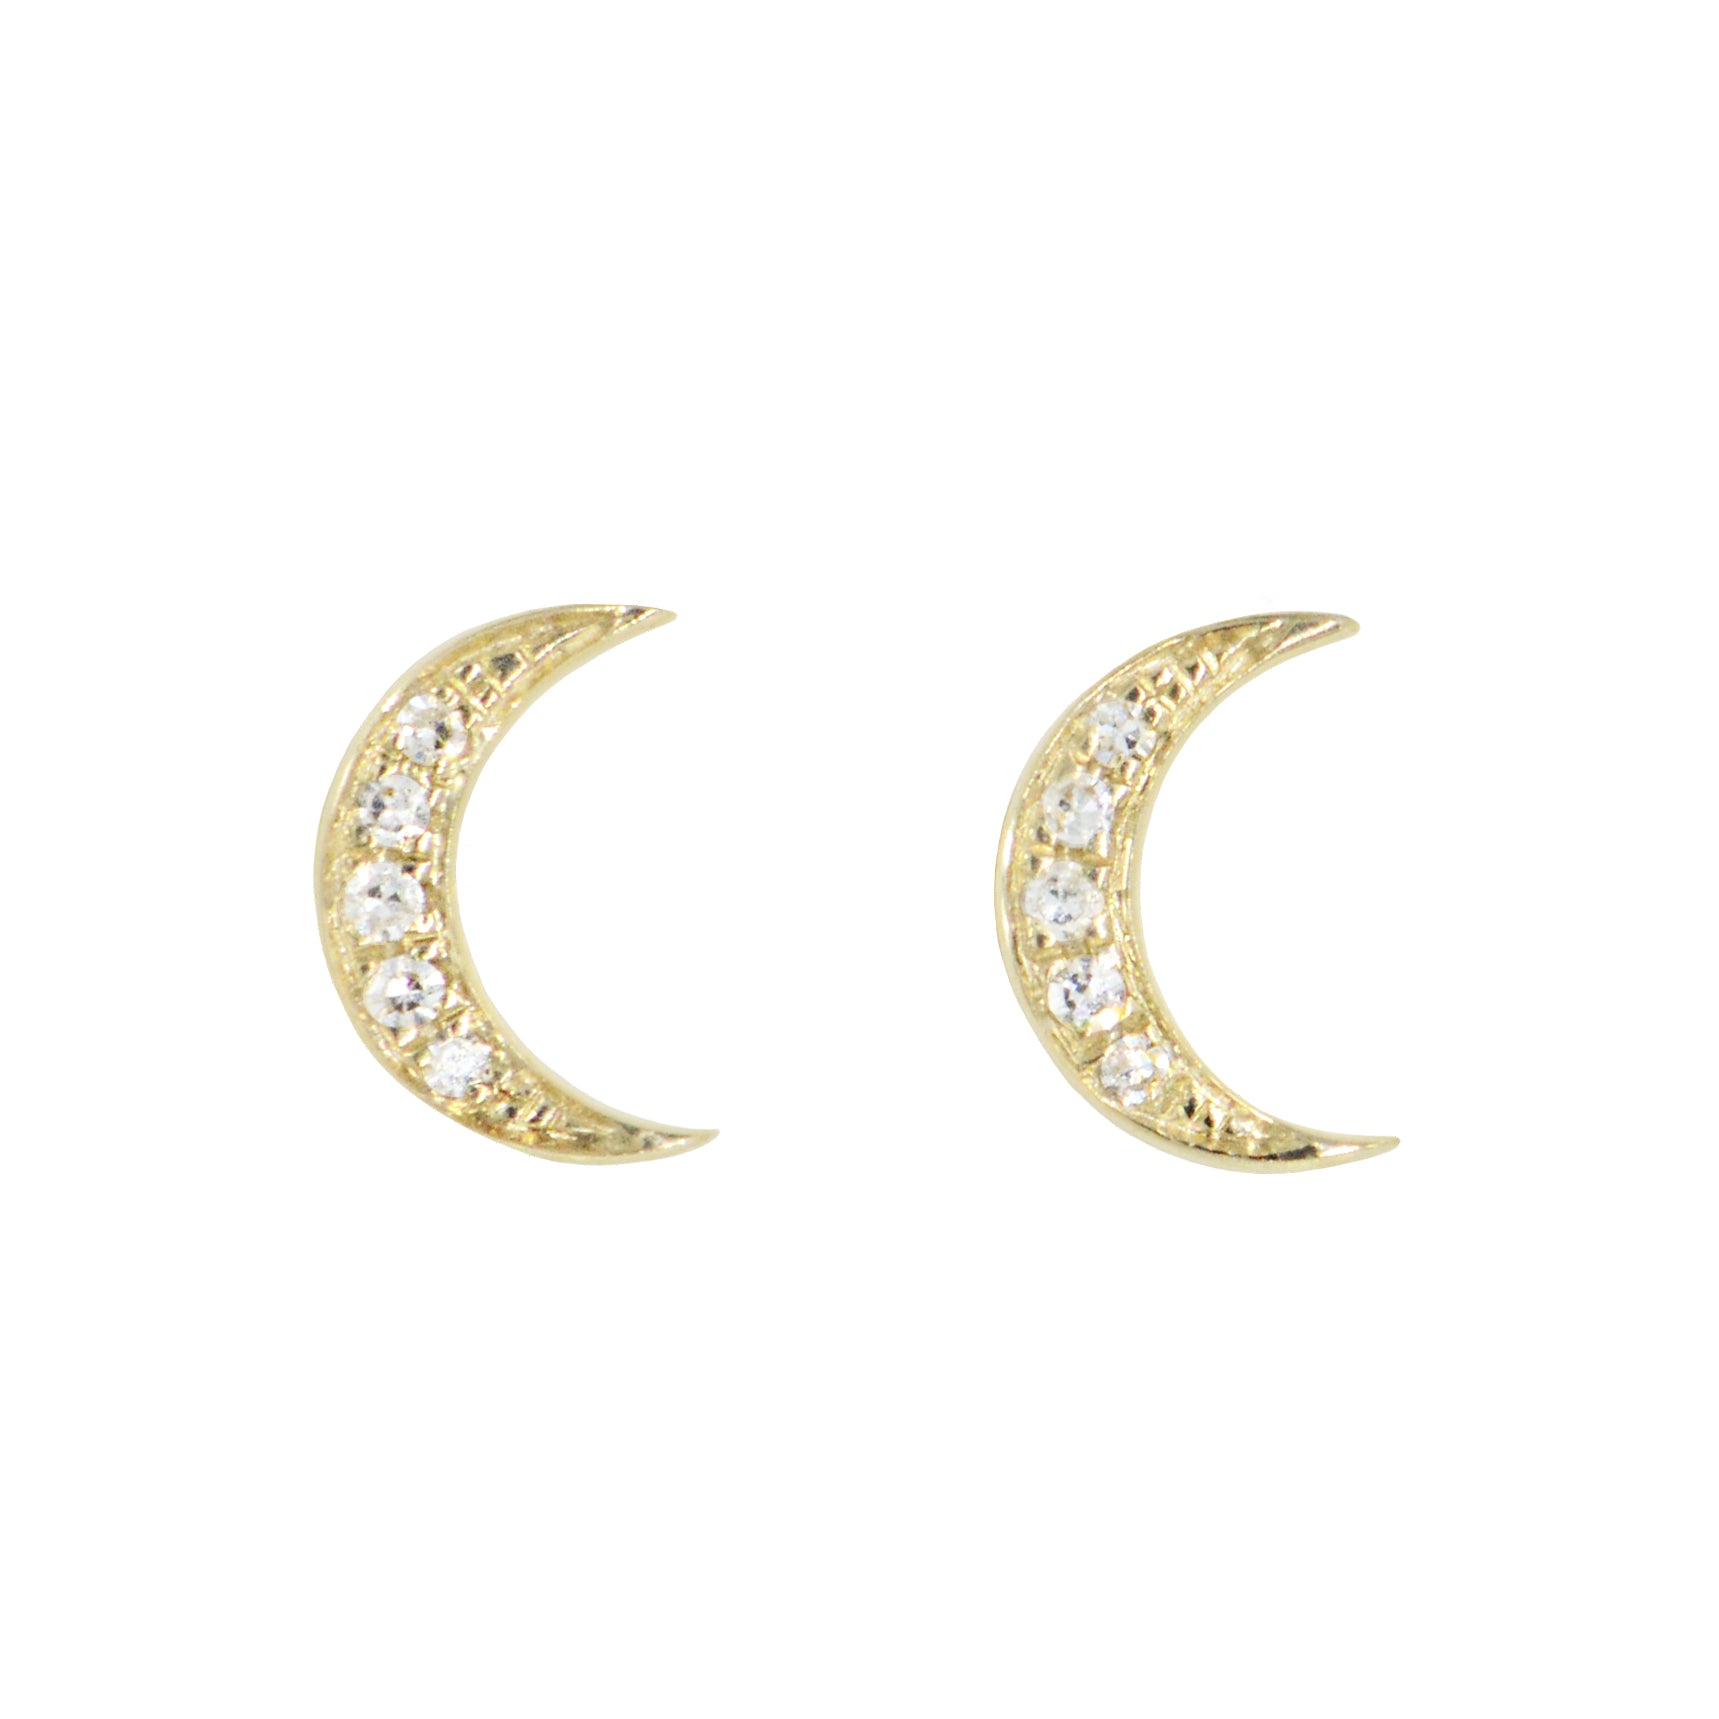 Crescent moon diamond stud earrings in 14k gold